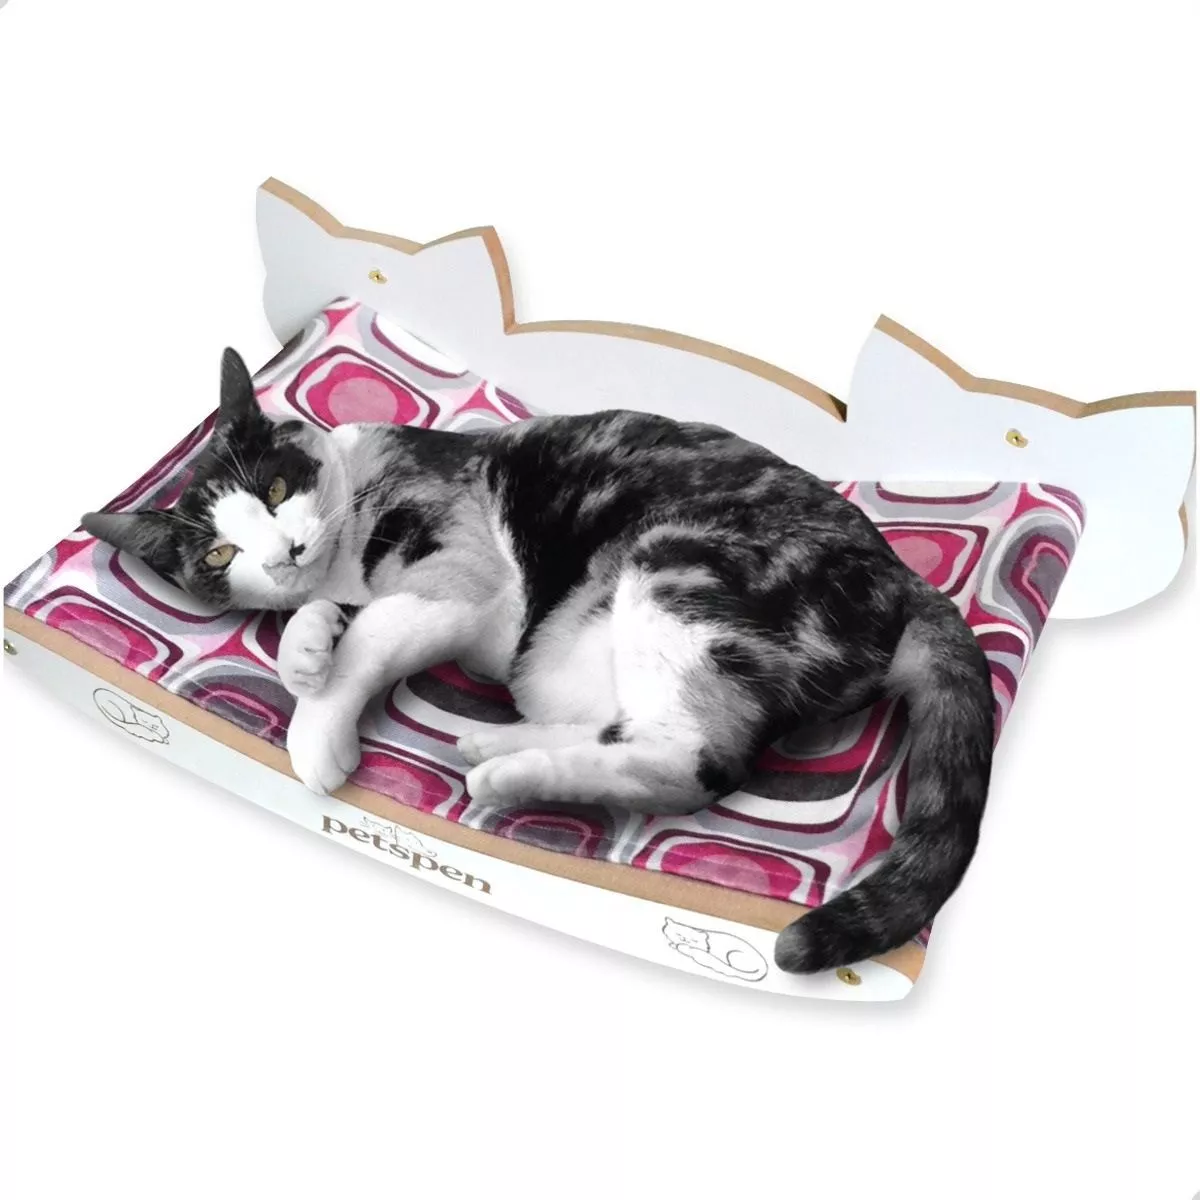 Primeira imagem para pesquisa de cama suspensa gato